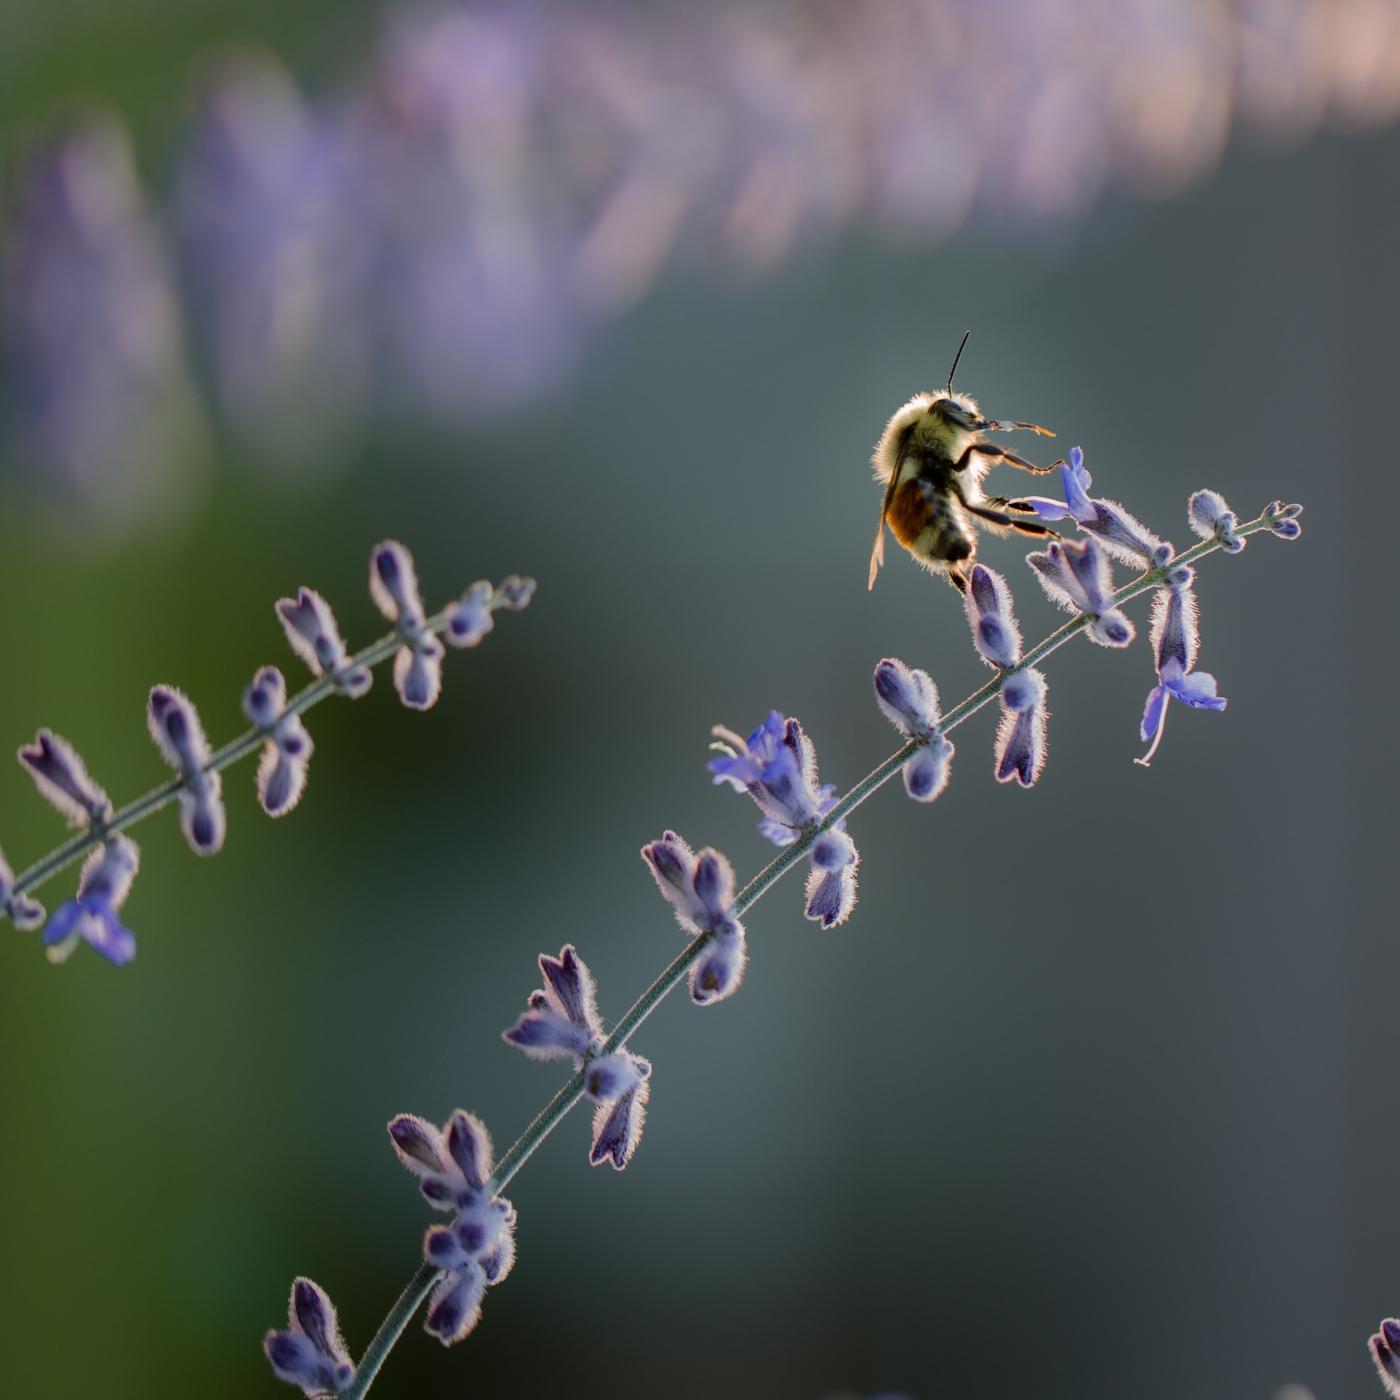 Abeille dans la lavande | Bleu Lavande x Bee City Canada pour la cause des abeilles